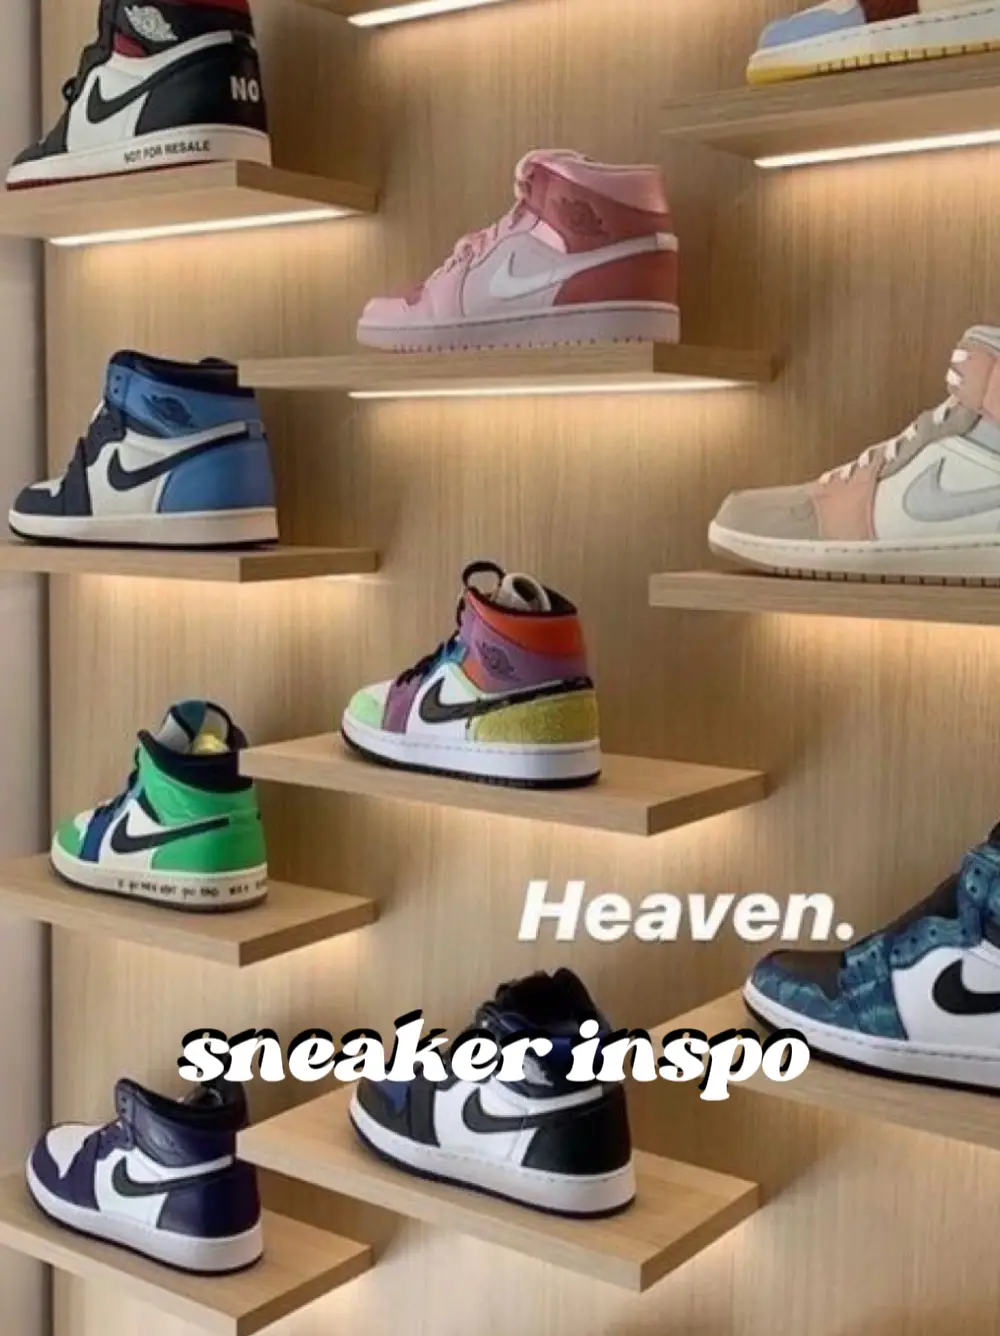 sneaker inspo 's images